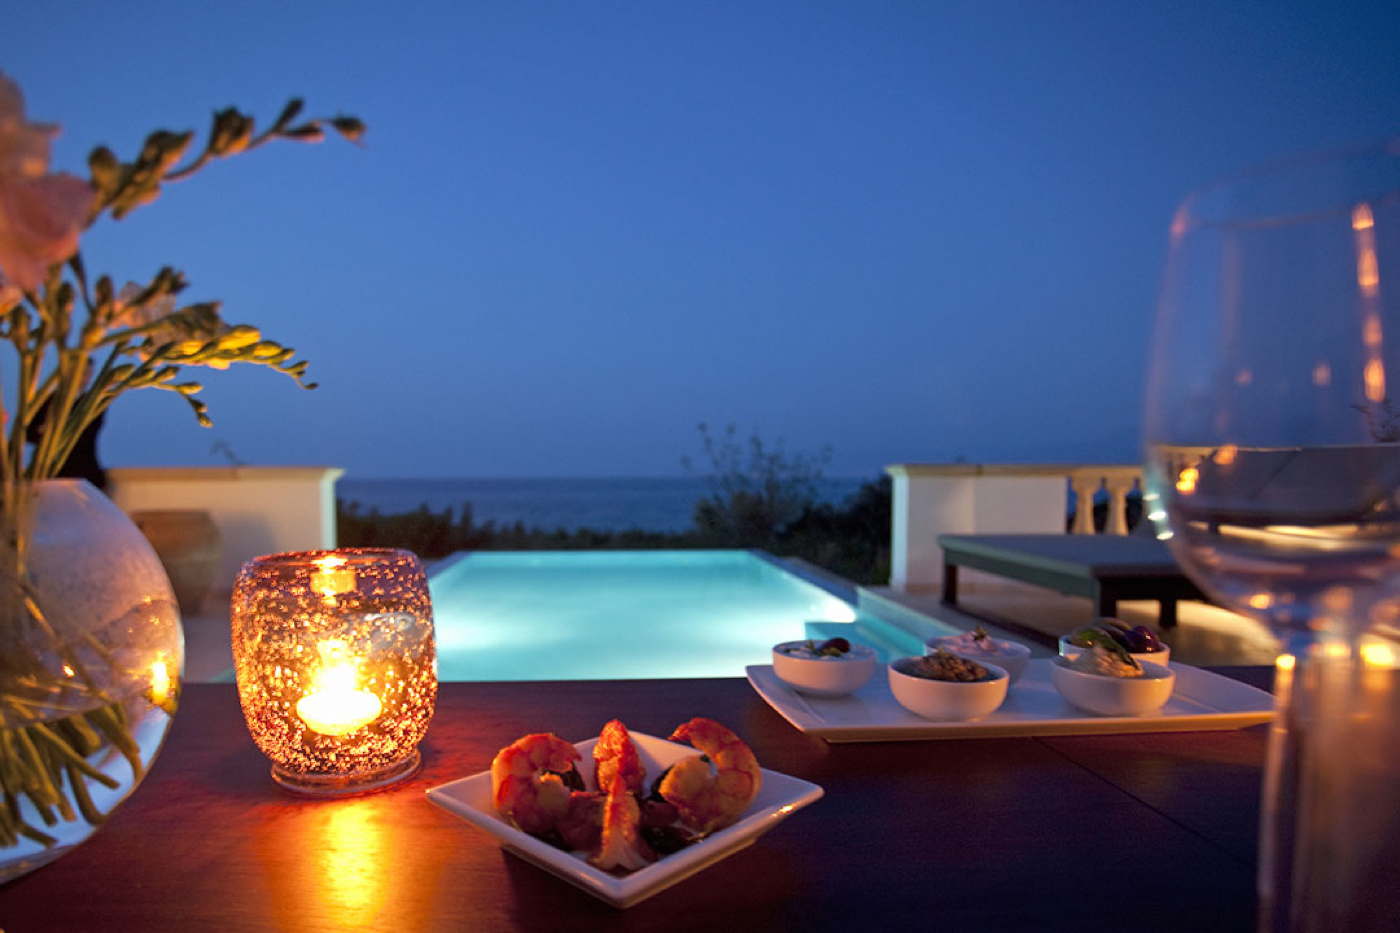 Luxusdomizil-Poolvilla-Zypern-Paphos-am Meer mieten